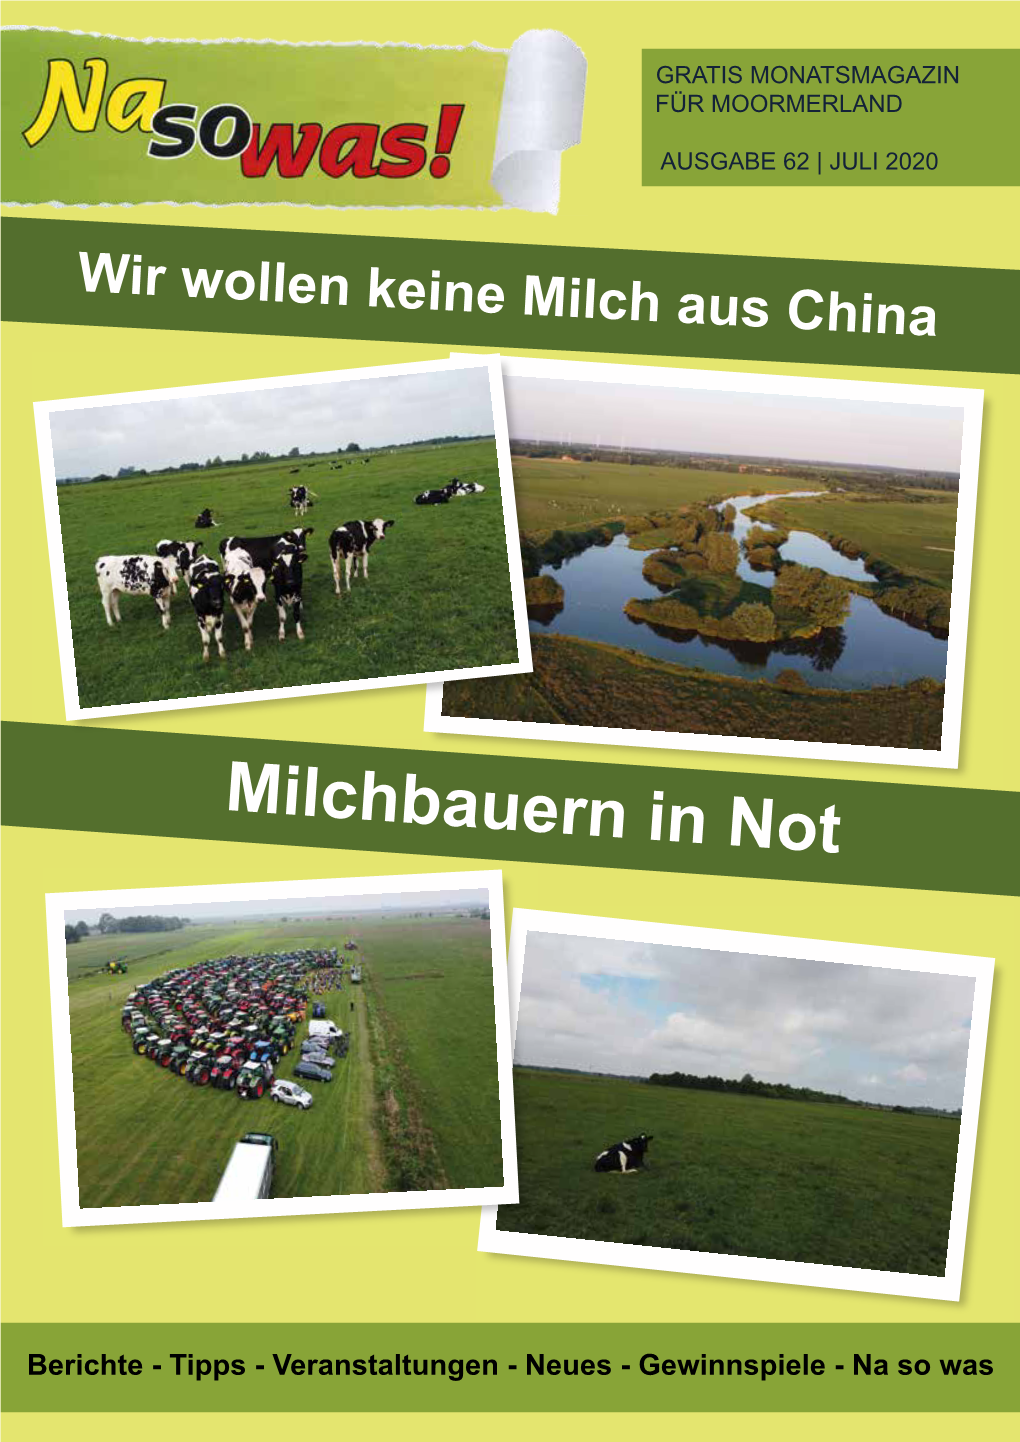 Milchbauern in Not